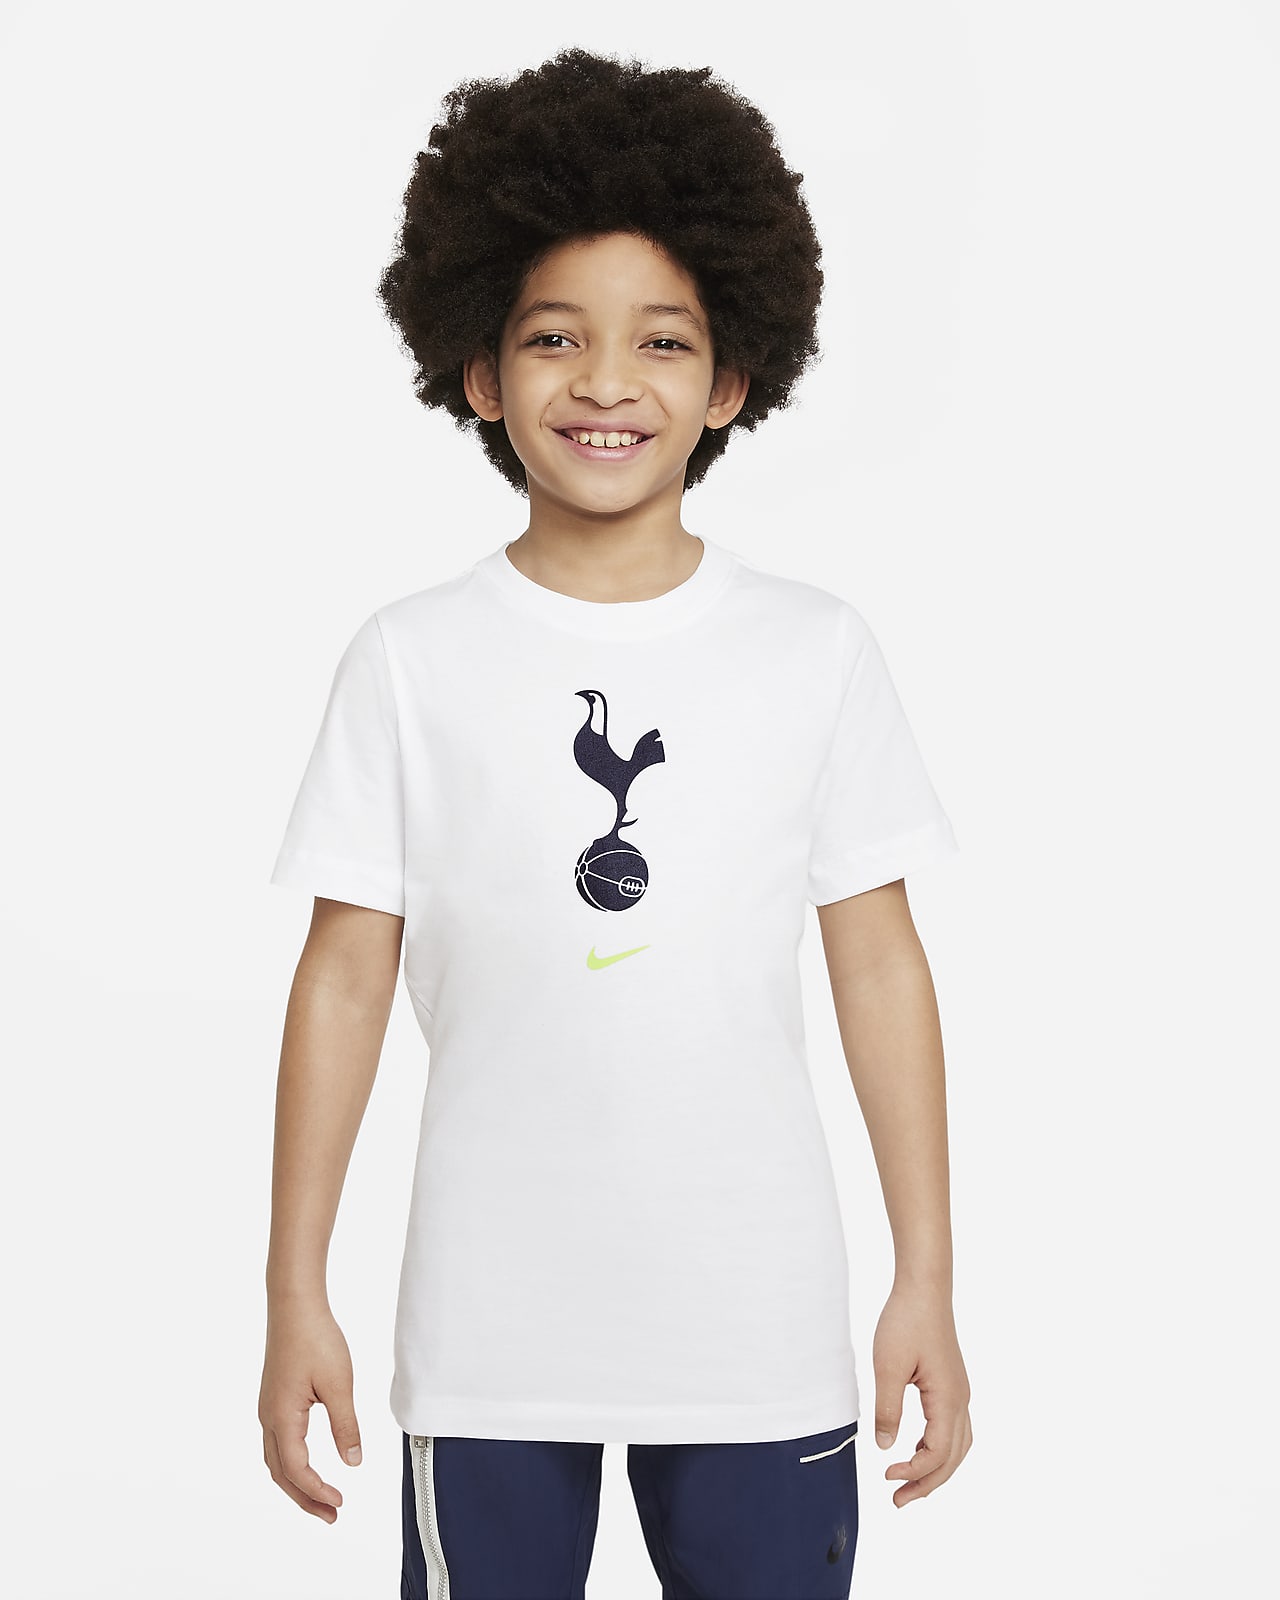 Tottenham Hotspur Crest Older Kids' Football T-Shirt